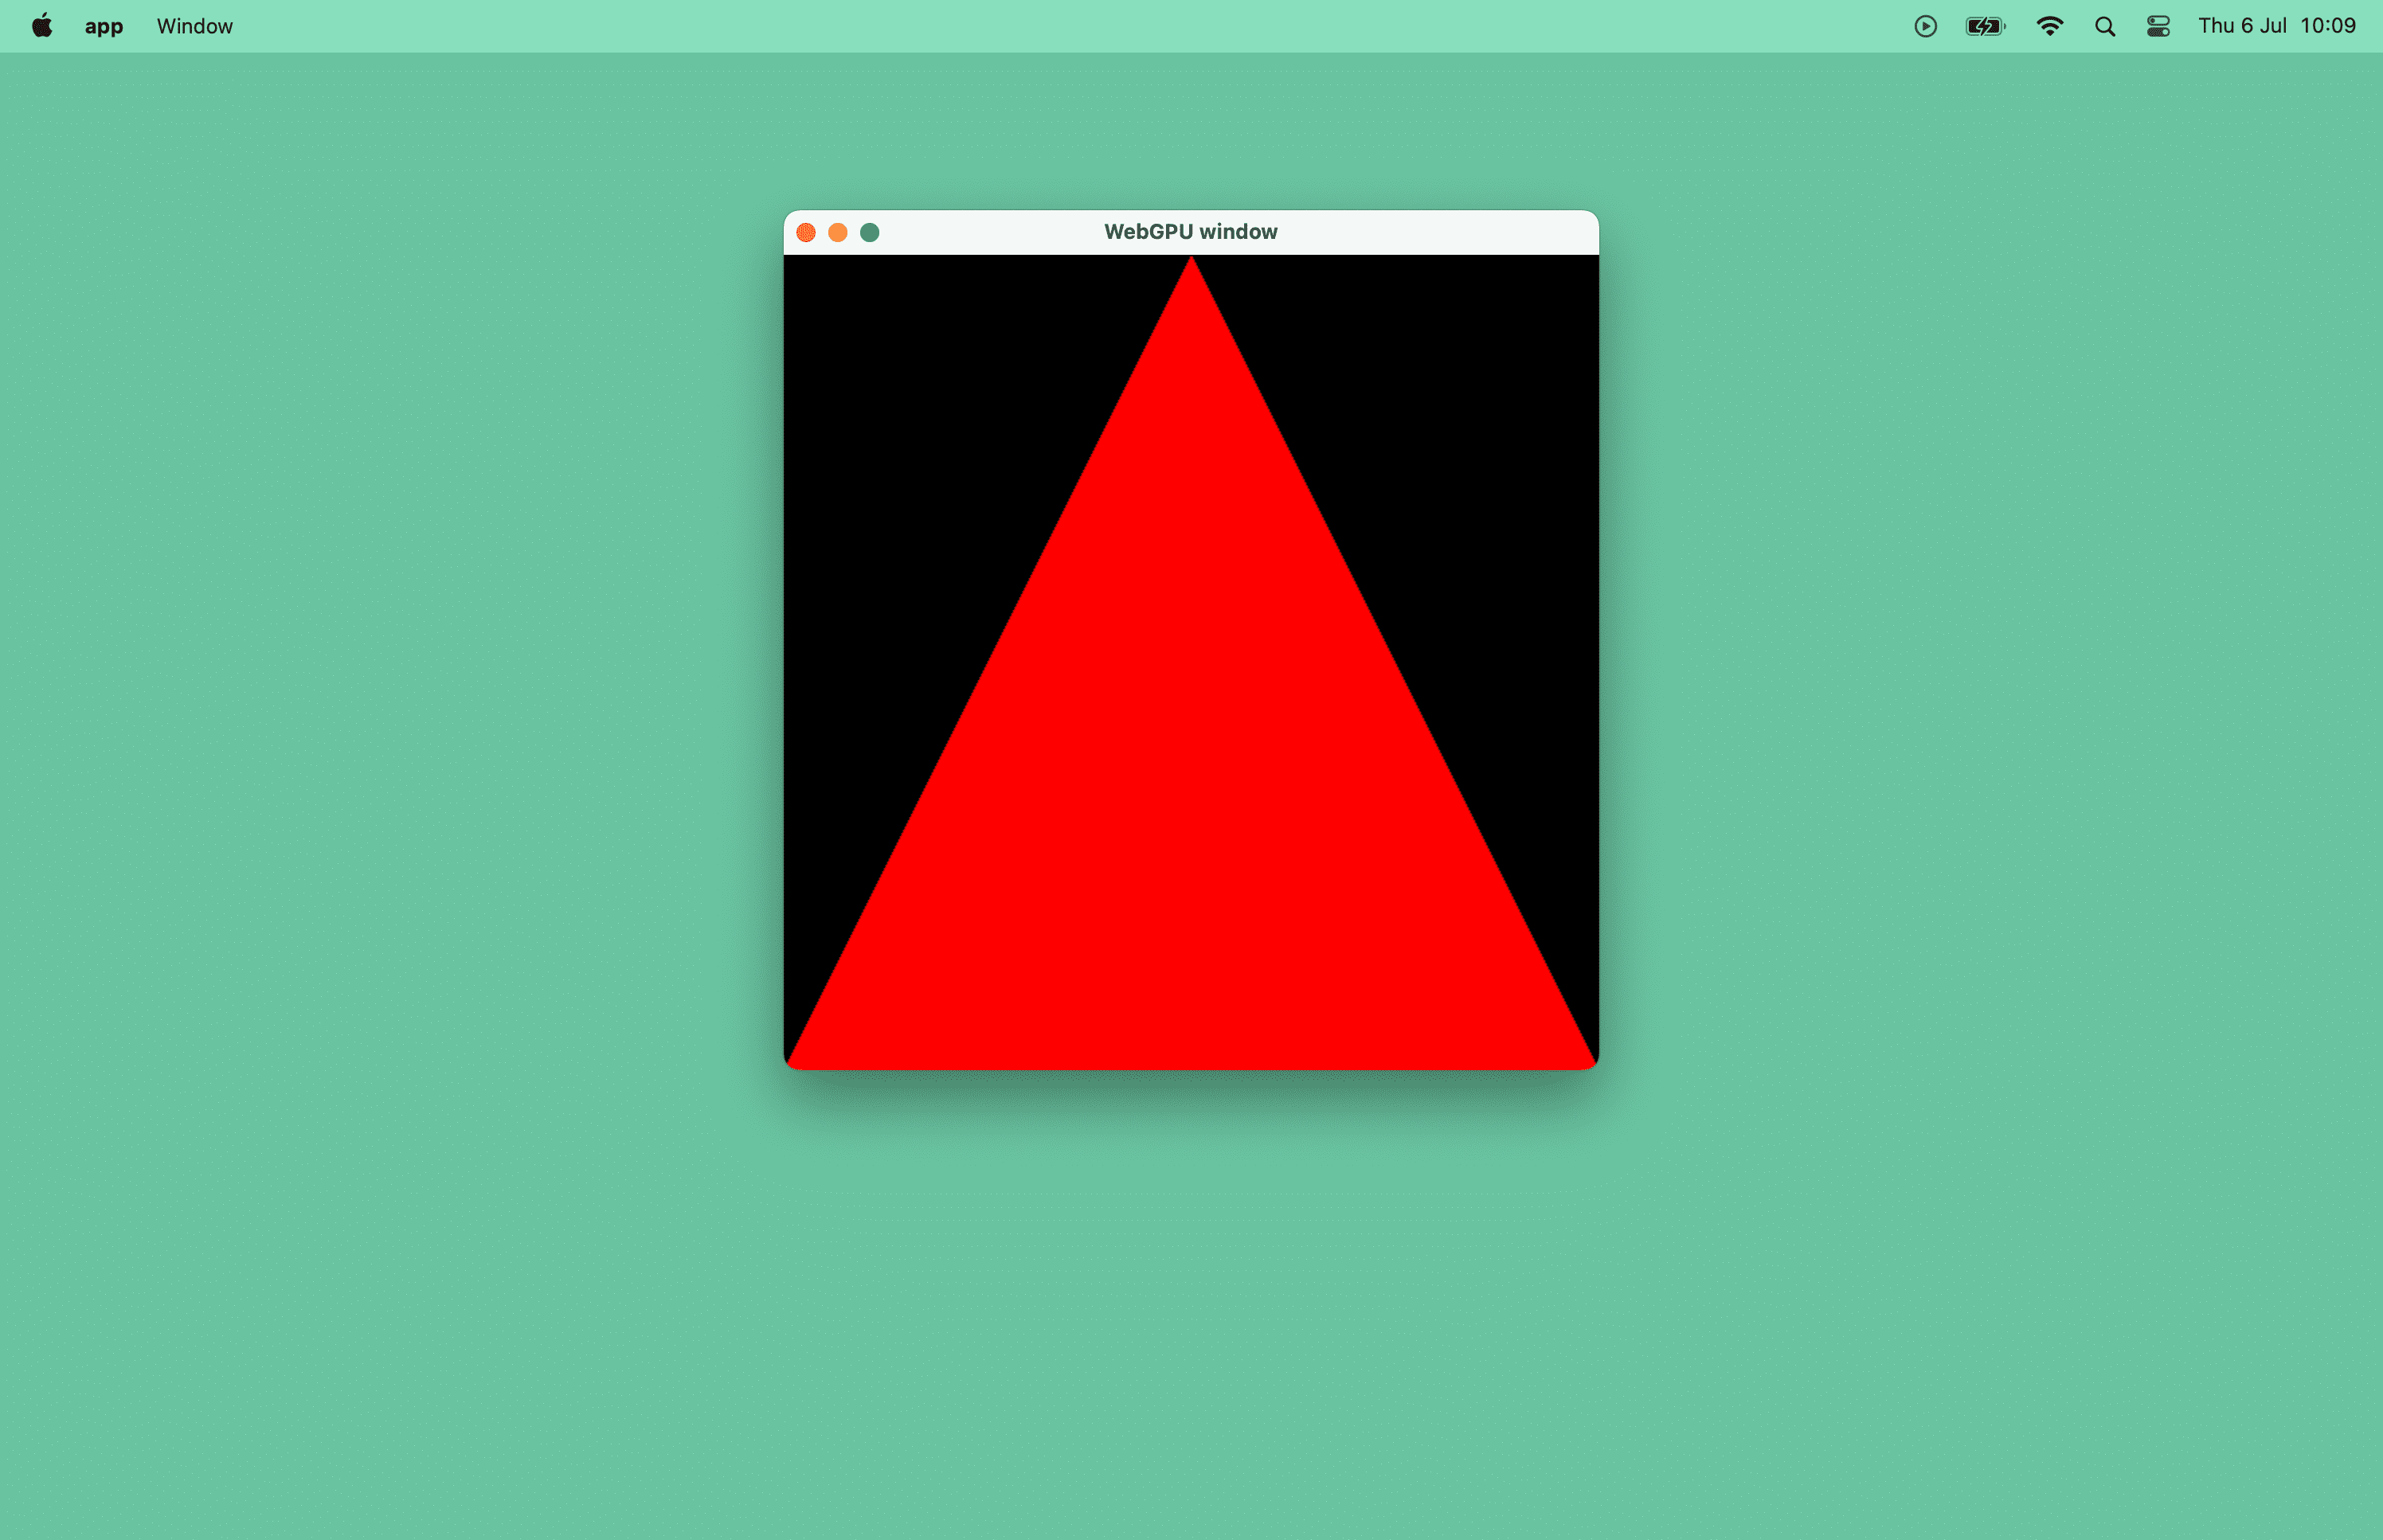 Captura de pantalla de un triángulo rojo en una ventana de macOS